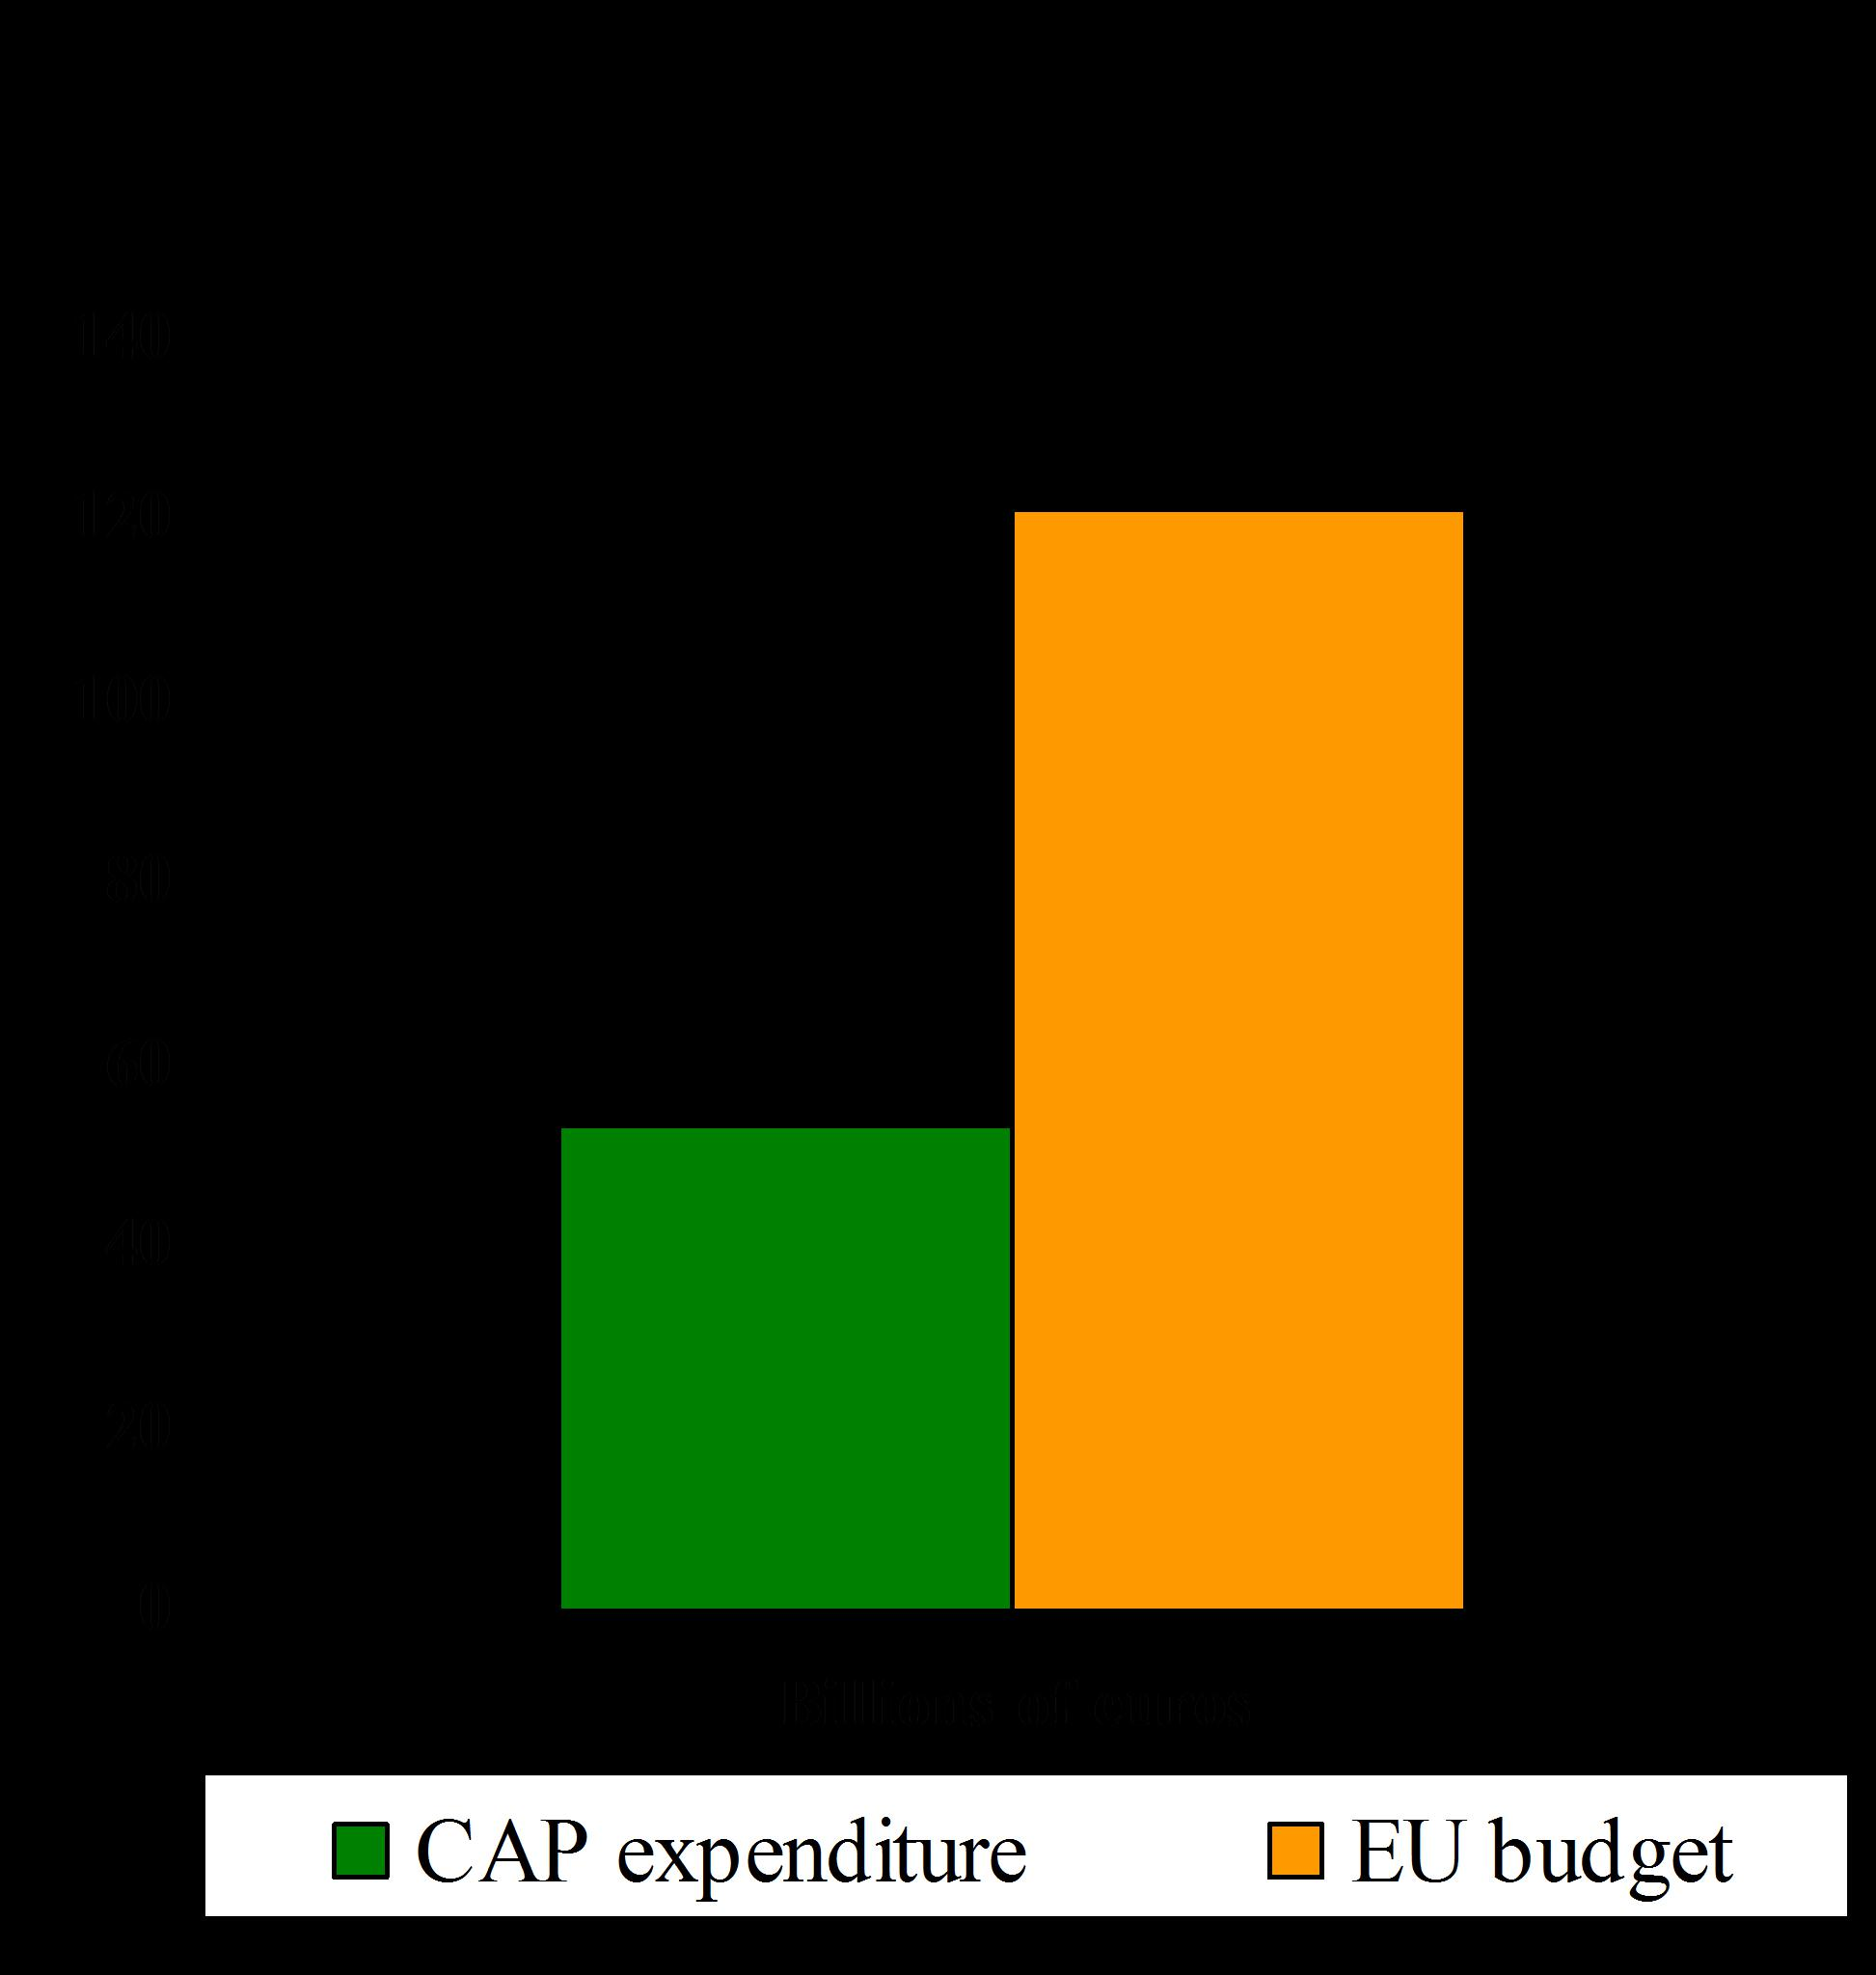 ΤΟ ΚΟΣΤΟΣ ΤΗΣ ΚΑΠ 44% of EU budget 0.